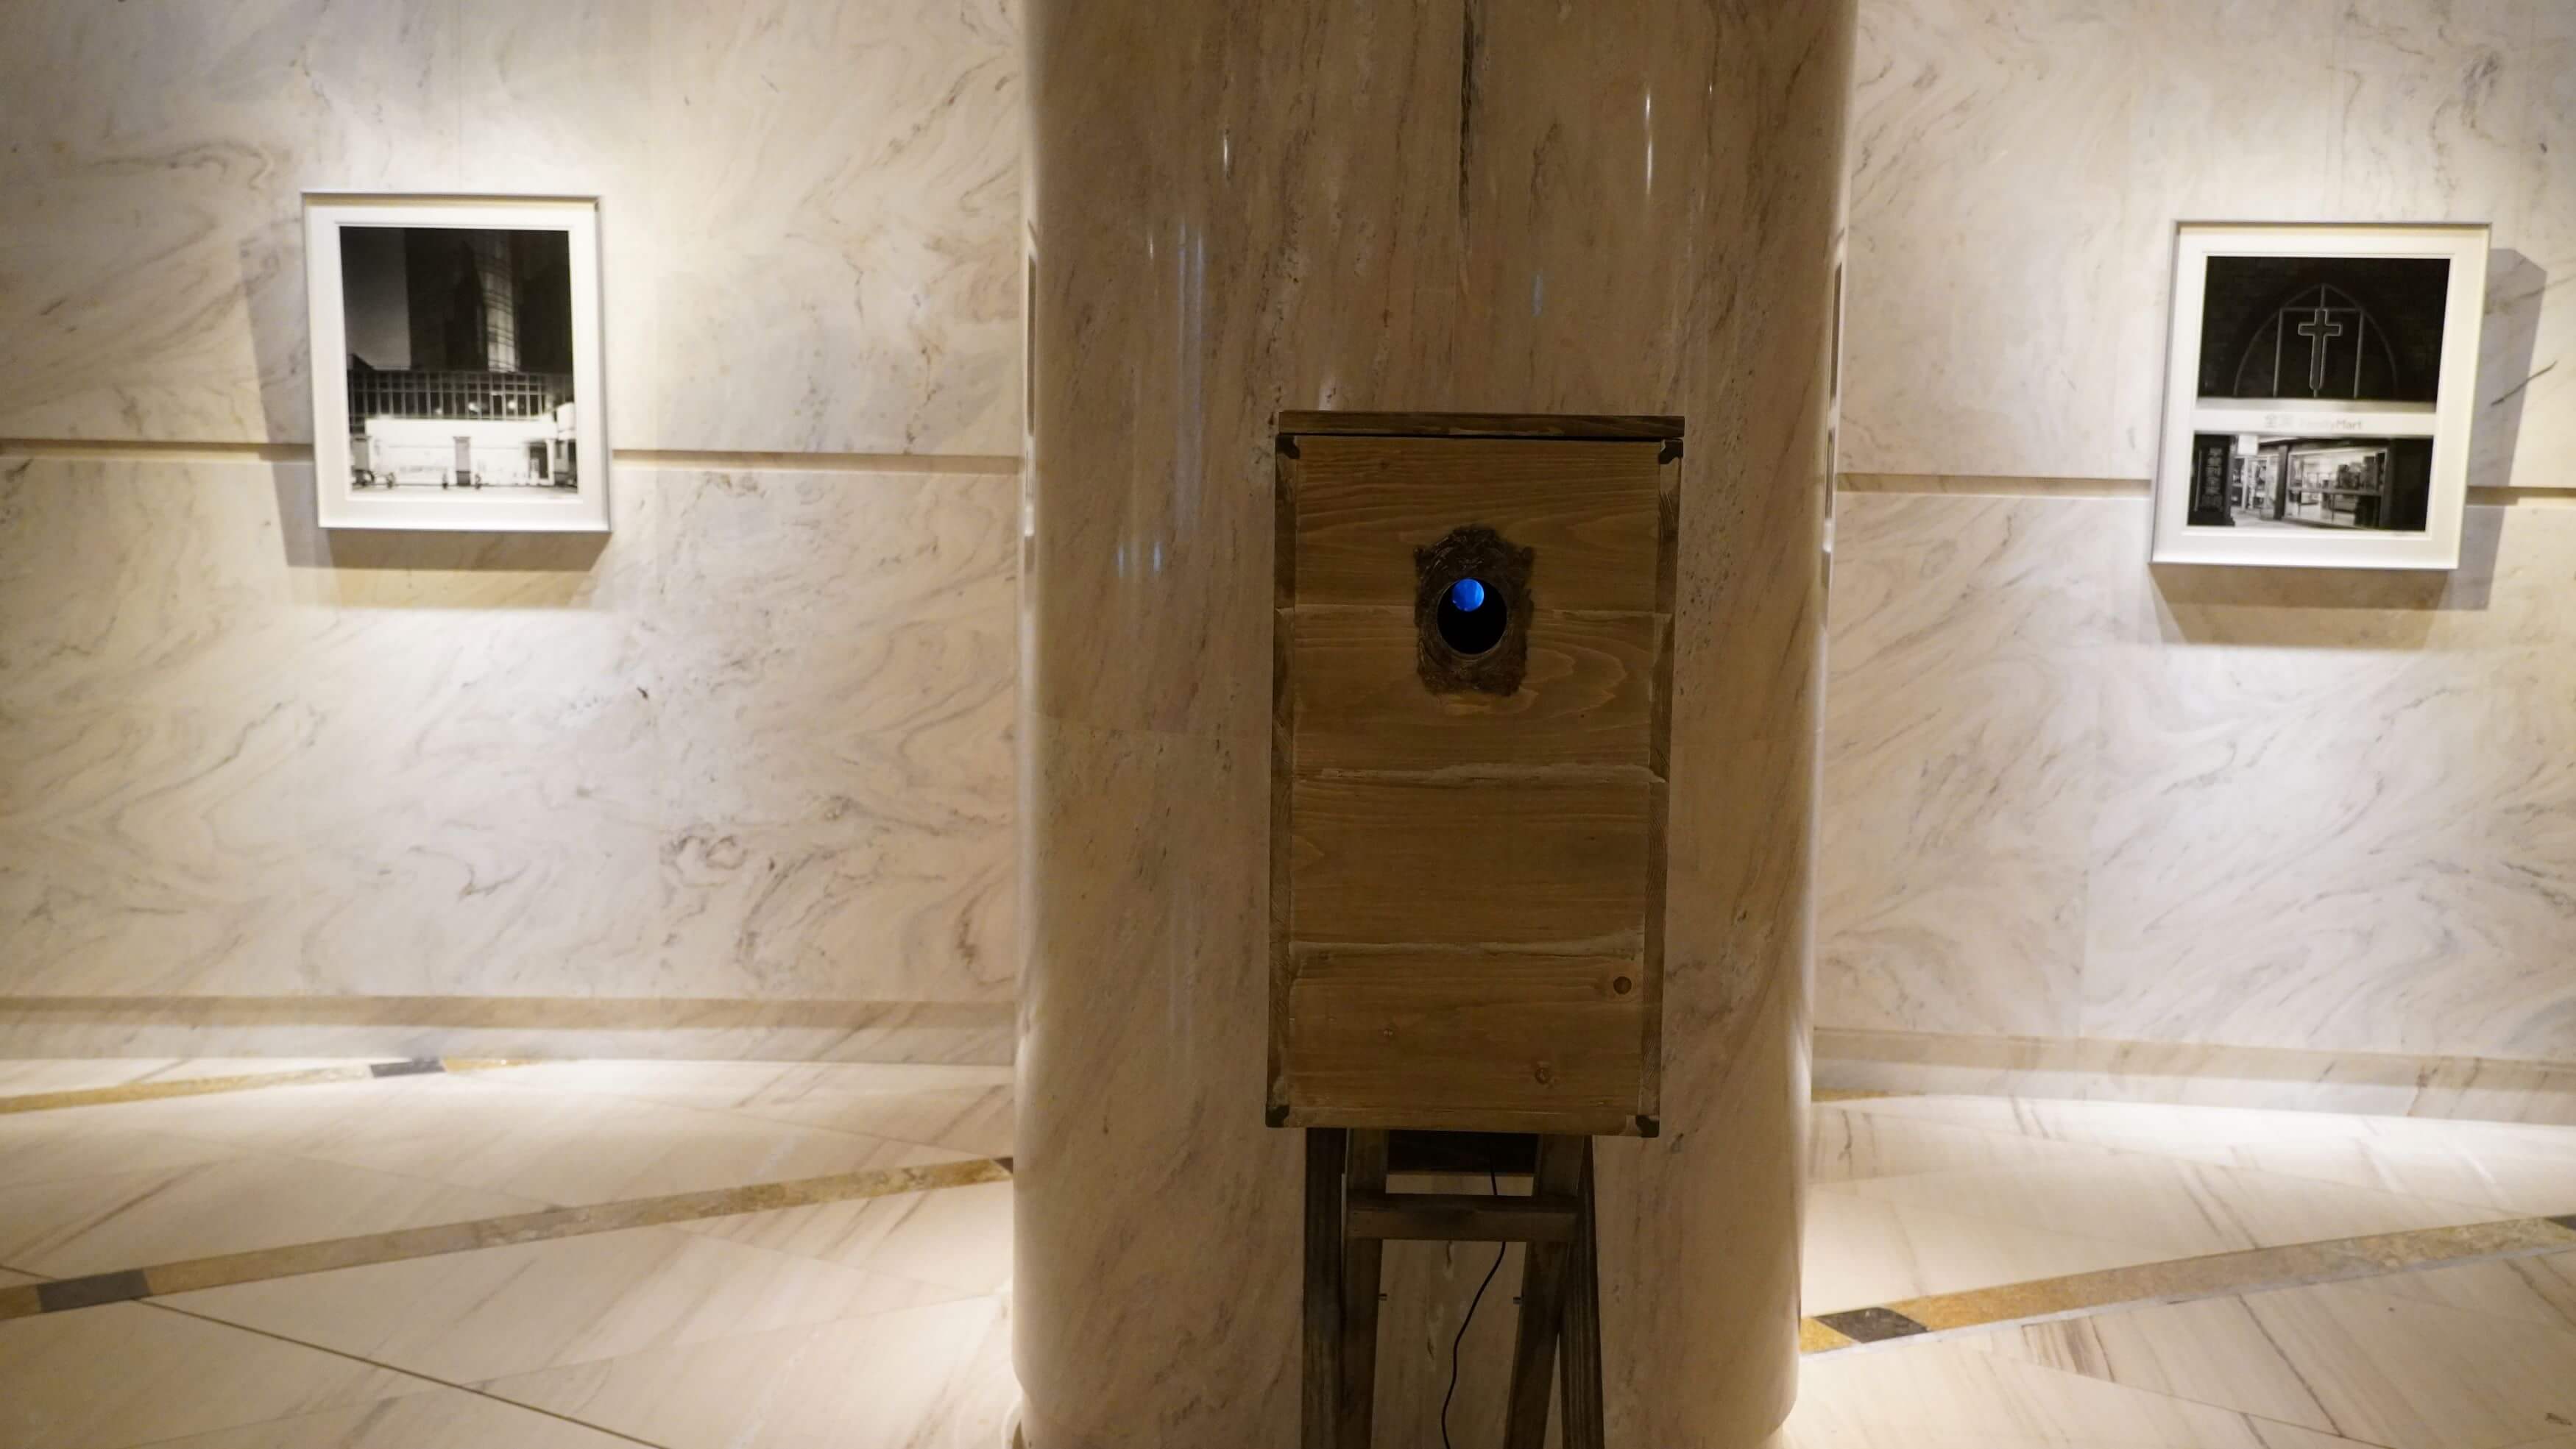 莫怡安展出三件帶有錄像的箱型裝置(前)；江俊德則展出一系列以便利商店為對象的攝影作品(後)。圖/王道銀行教育基金會